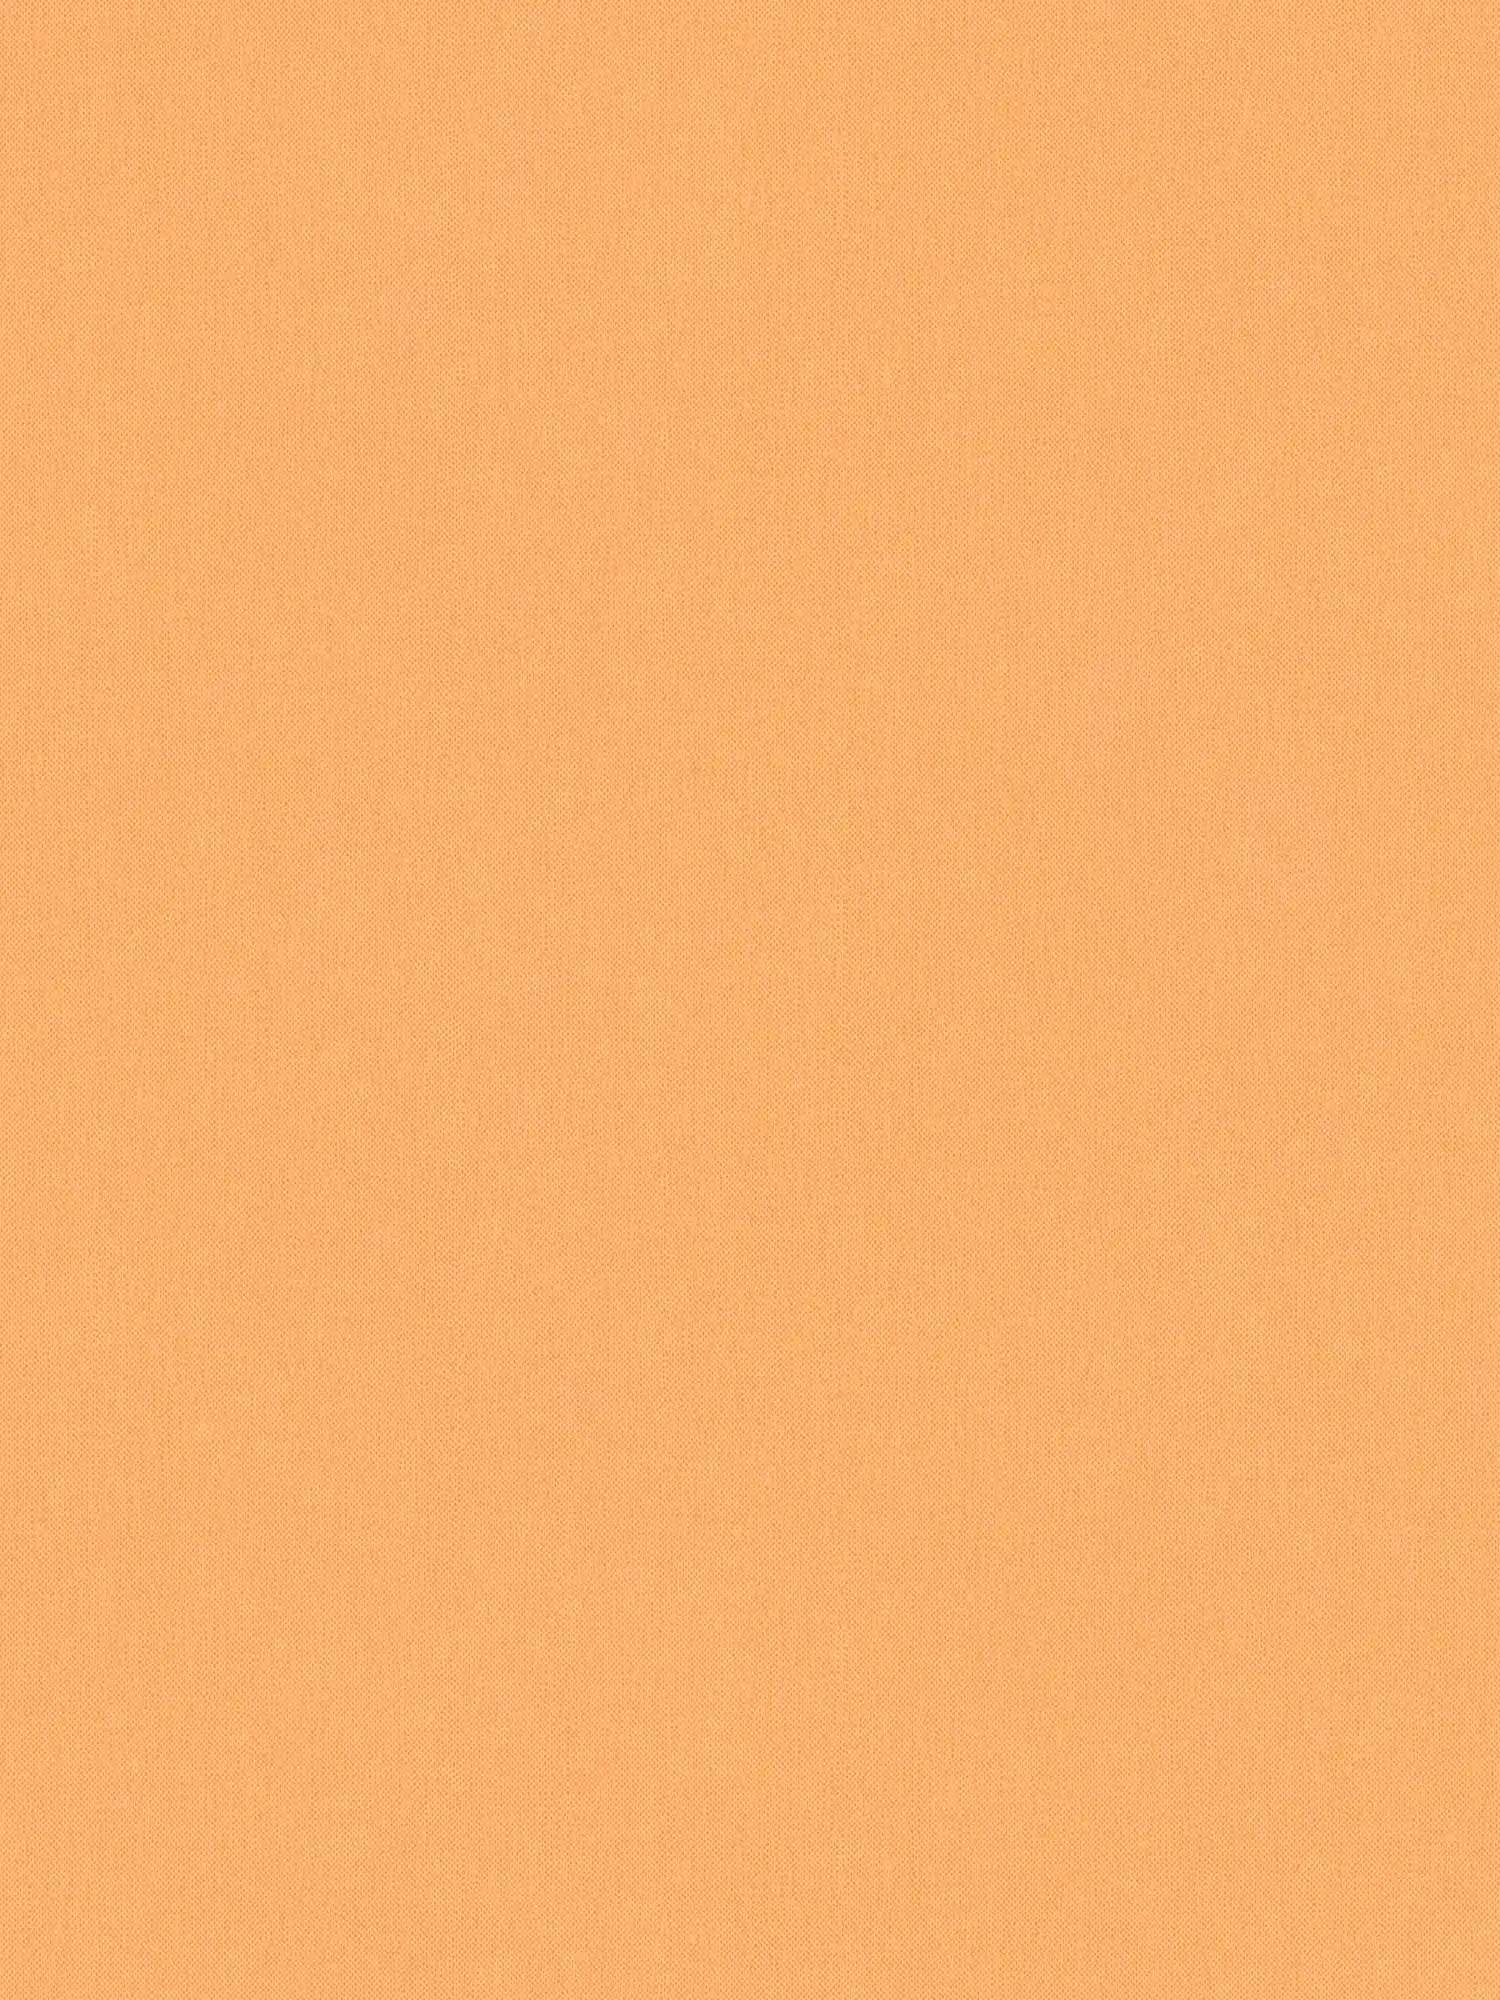 Papier peint orange pastel & mat avec structure imitation lin - orange
